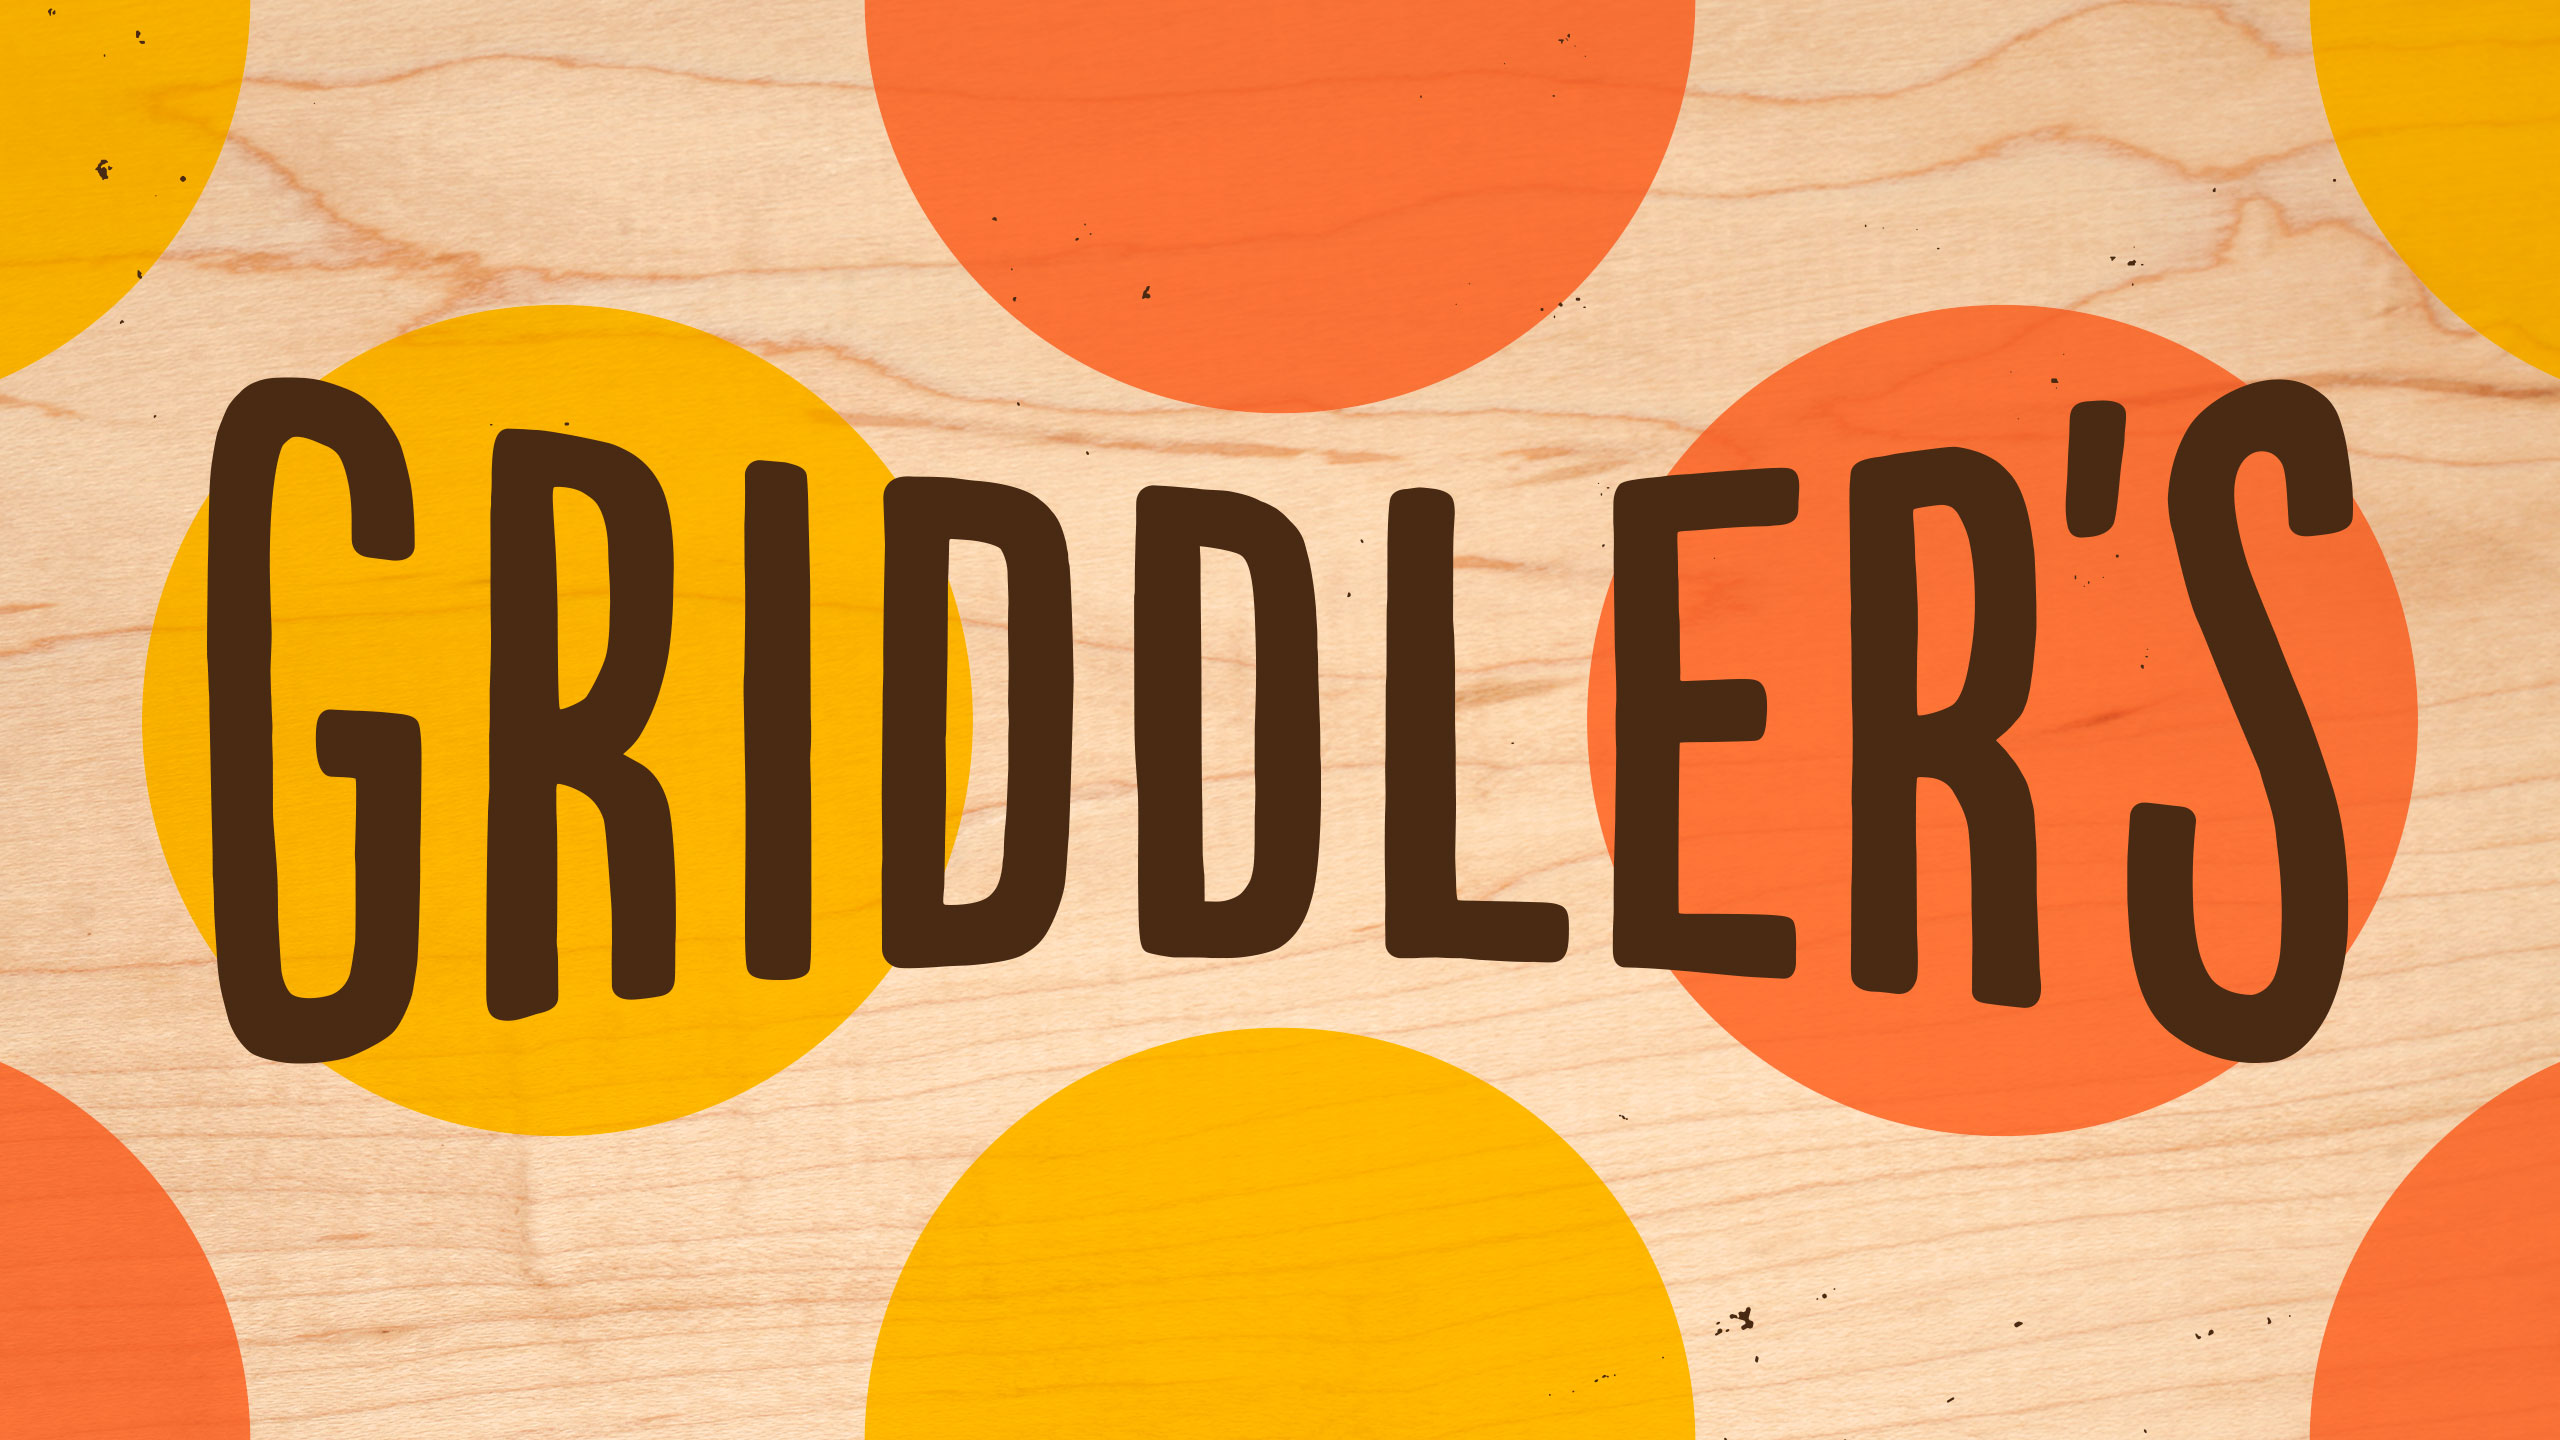 Griddler's Burgers + Dogs wordmark